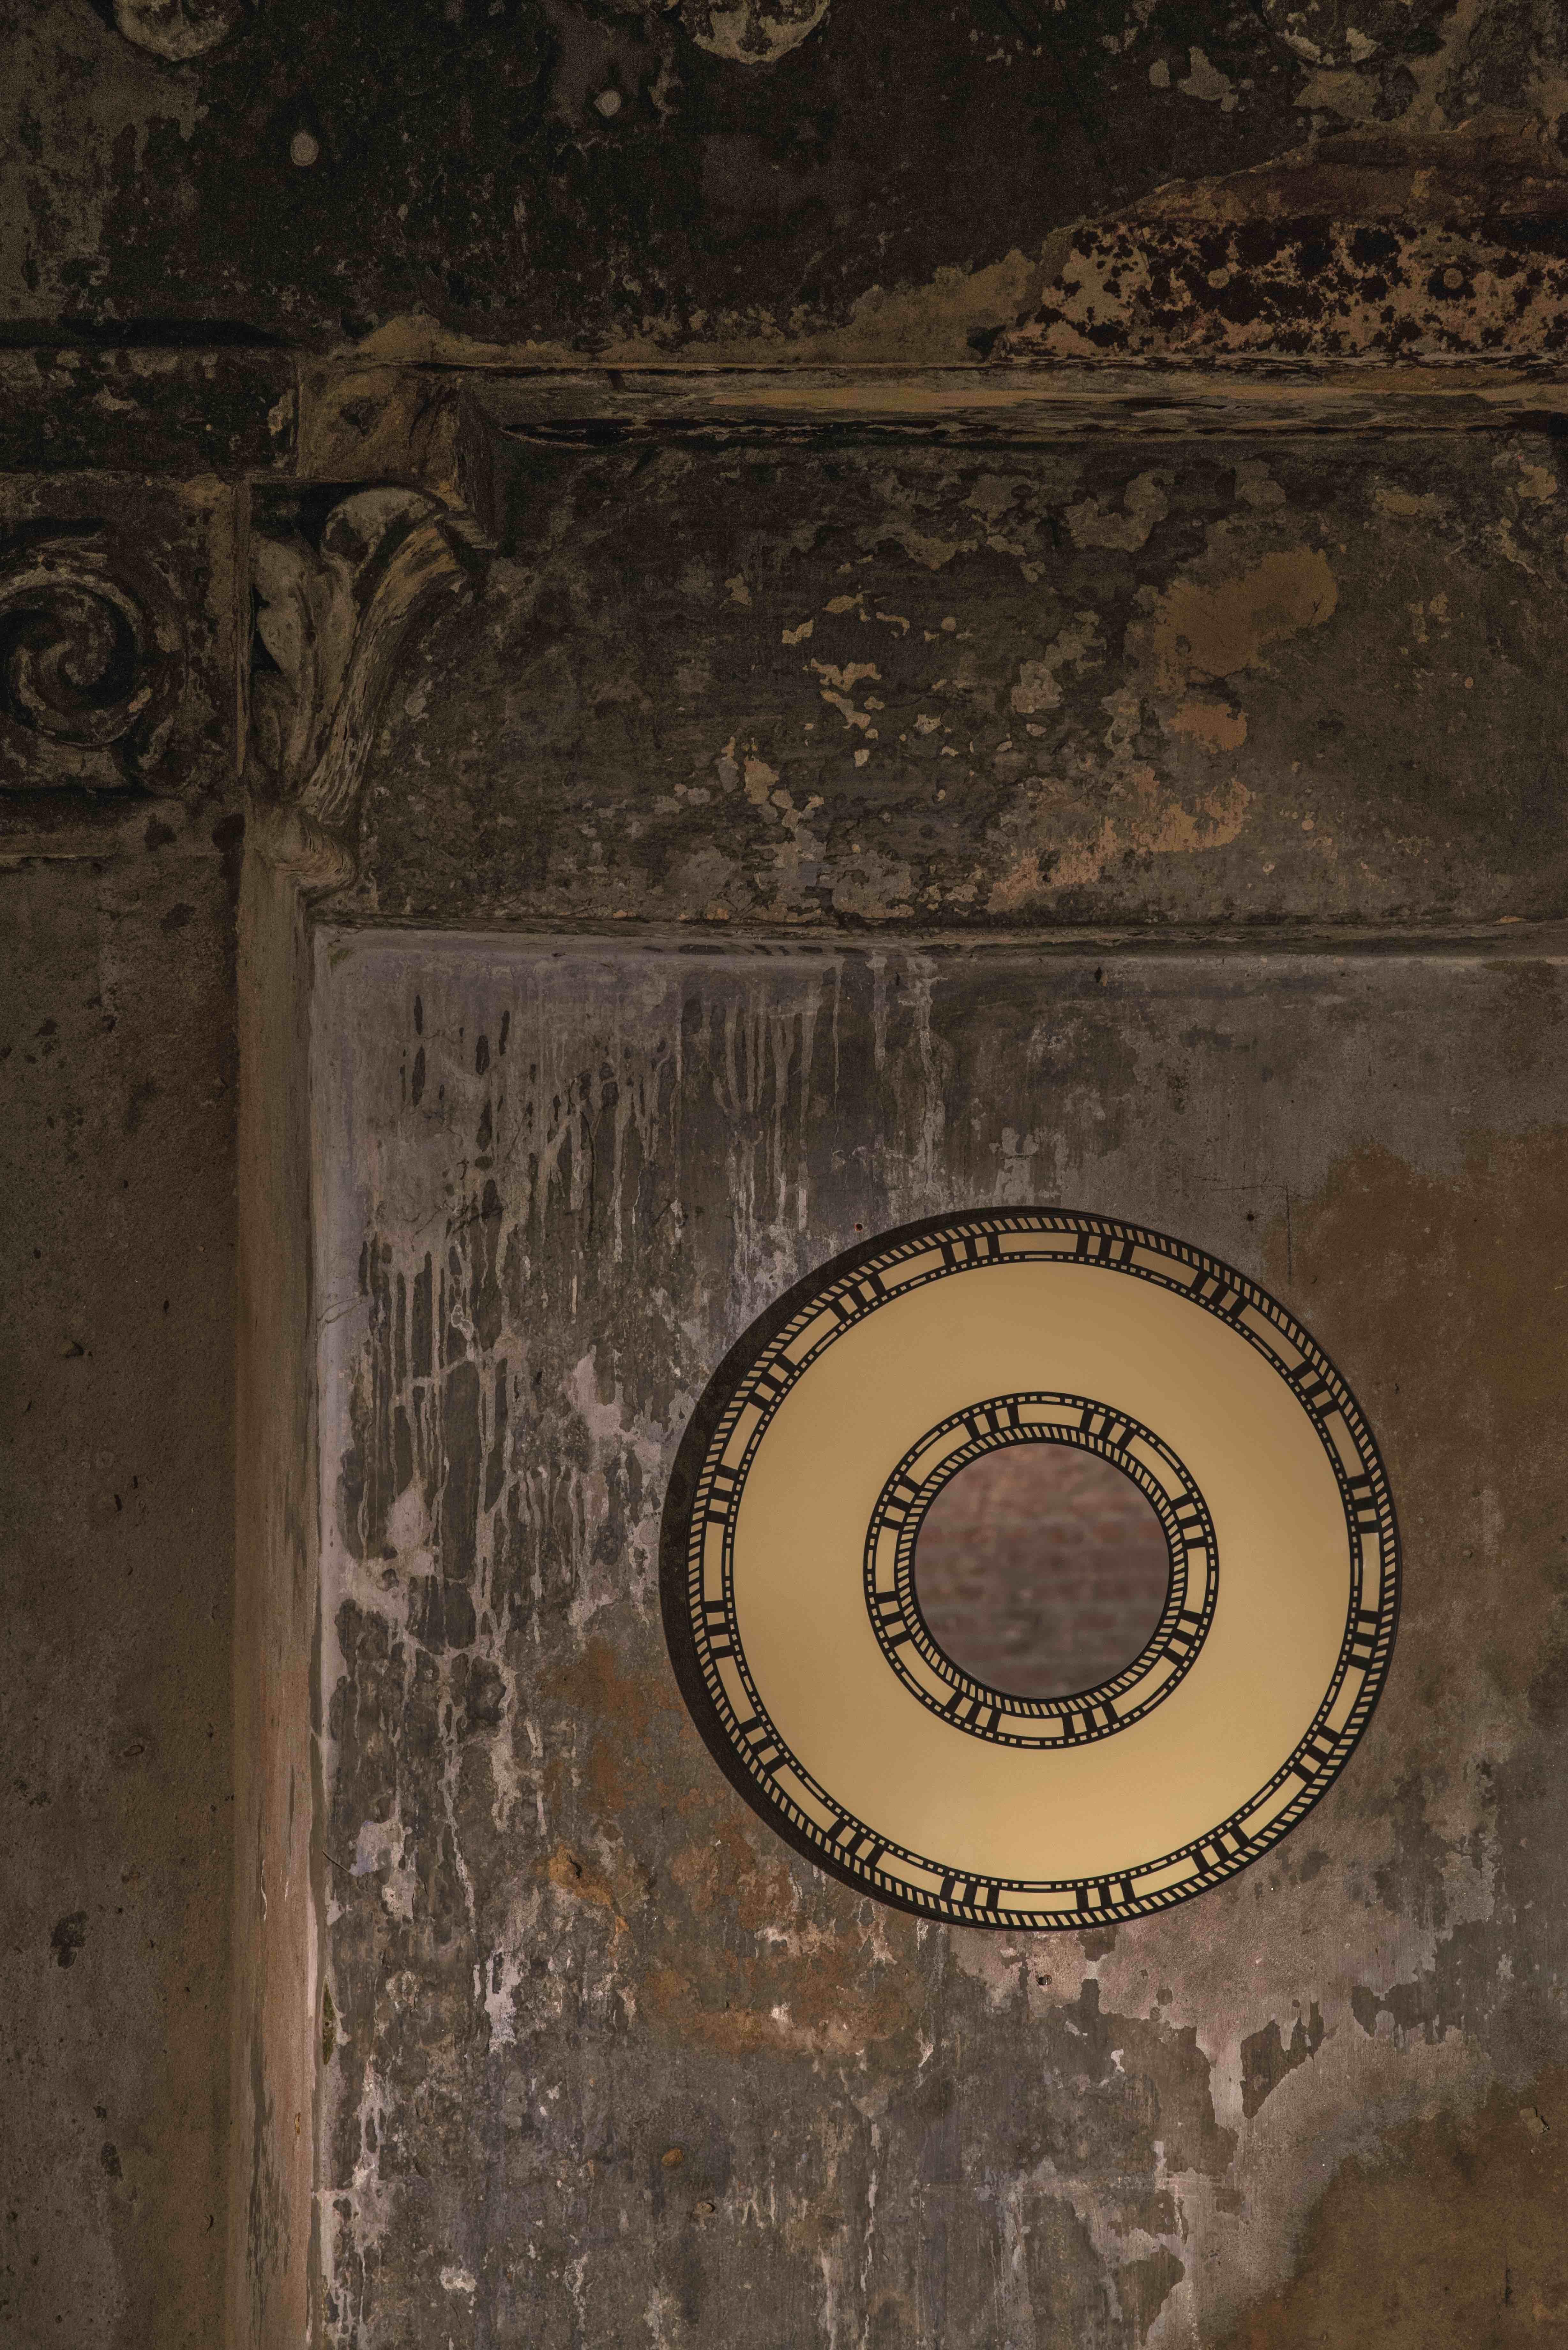 Der Sunrise Wall Console Mirror von Matteo Cibic ist ein schöner, ziemlich kleiner, runder Spiegel.

Indiens Kunsthandwerk ist so vielfältig wie seine Kulturen und so reich wie seine Geschichte. Die Kunst der Knochen- und Hornintarsien ist hier